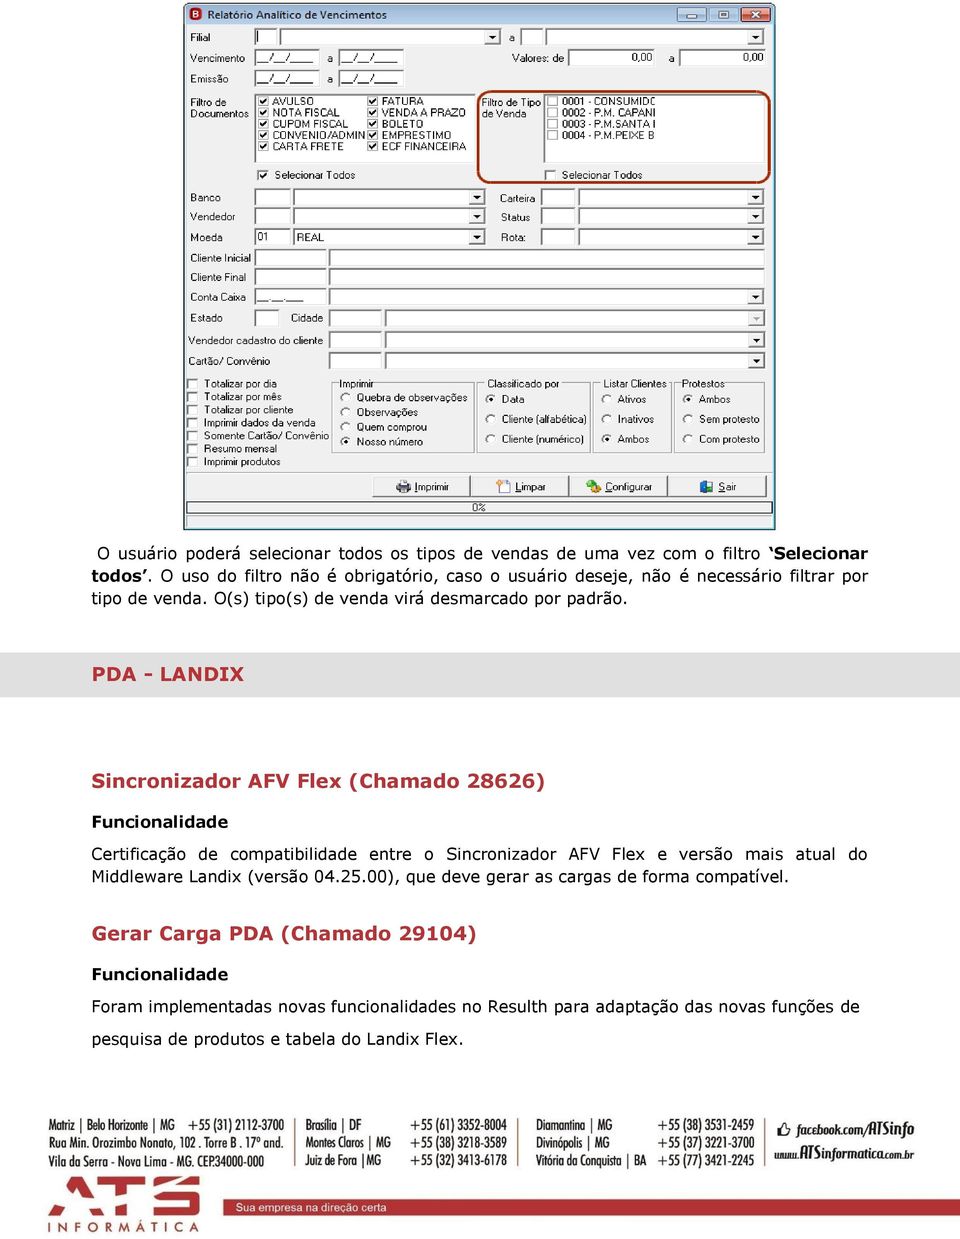 PDA - LANDIX Sincronizador AFV Flex (Chamado 28626) Certificação de compatibilidade entre o Sincronizador AFV Flex e versão mais atual do Middleware Landix